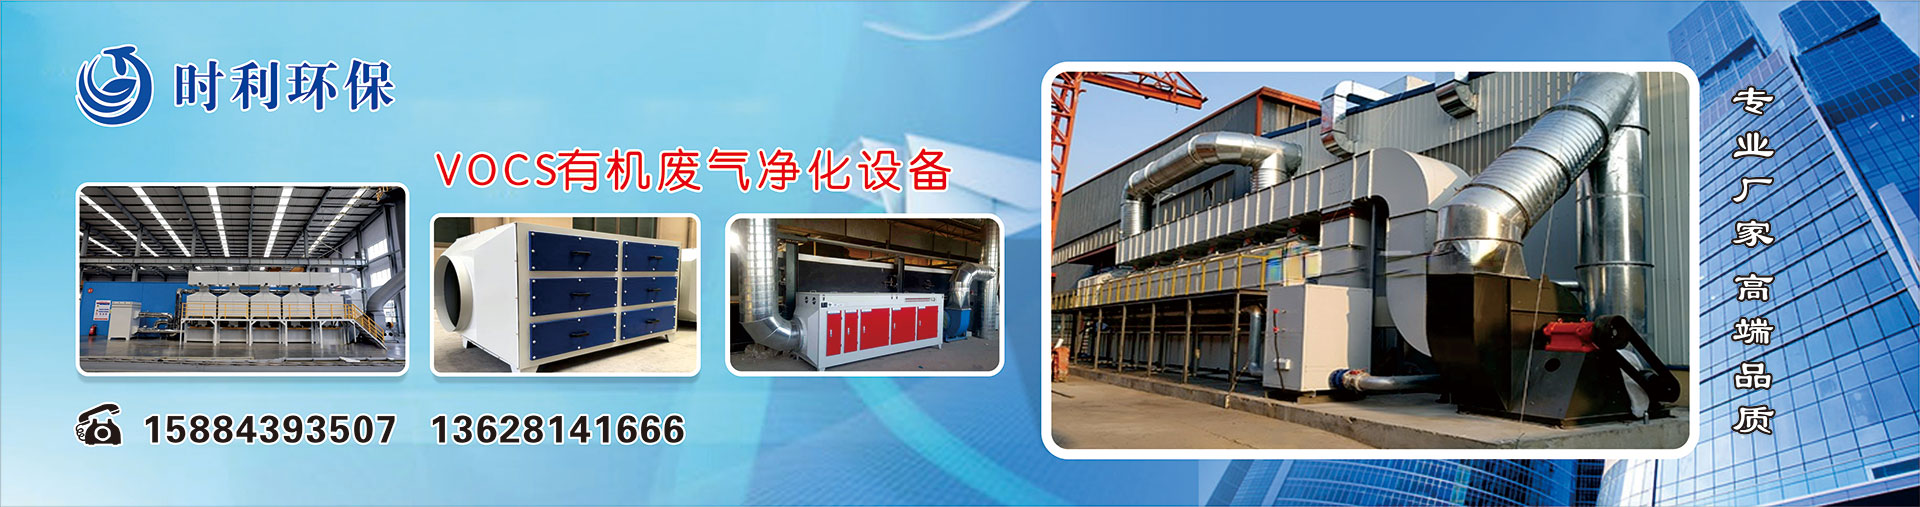 广州巨领机电设备有限公司